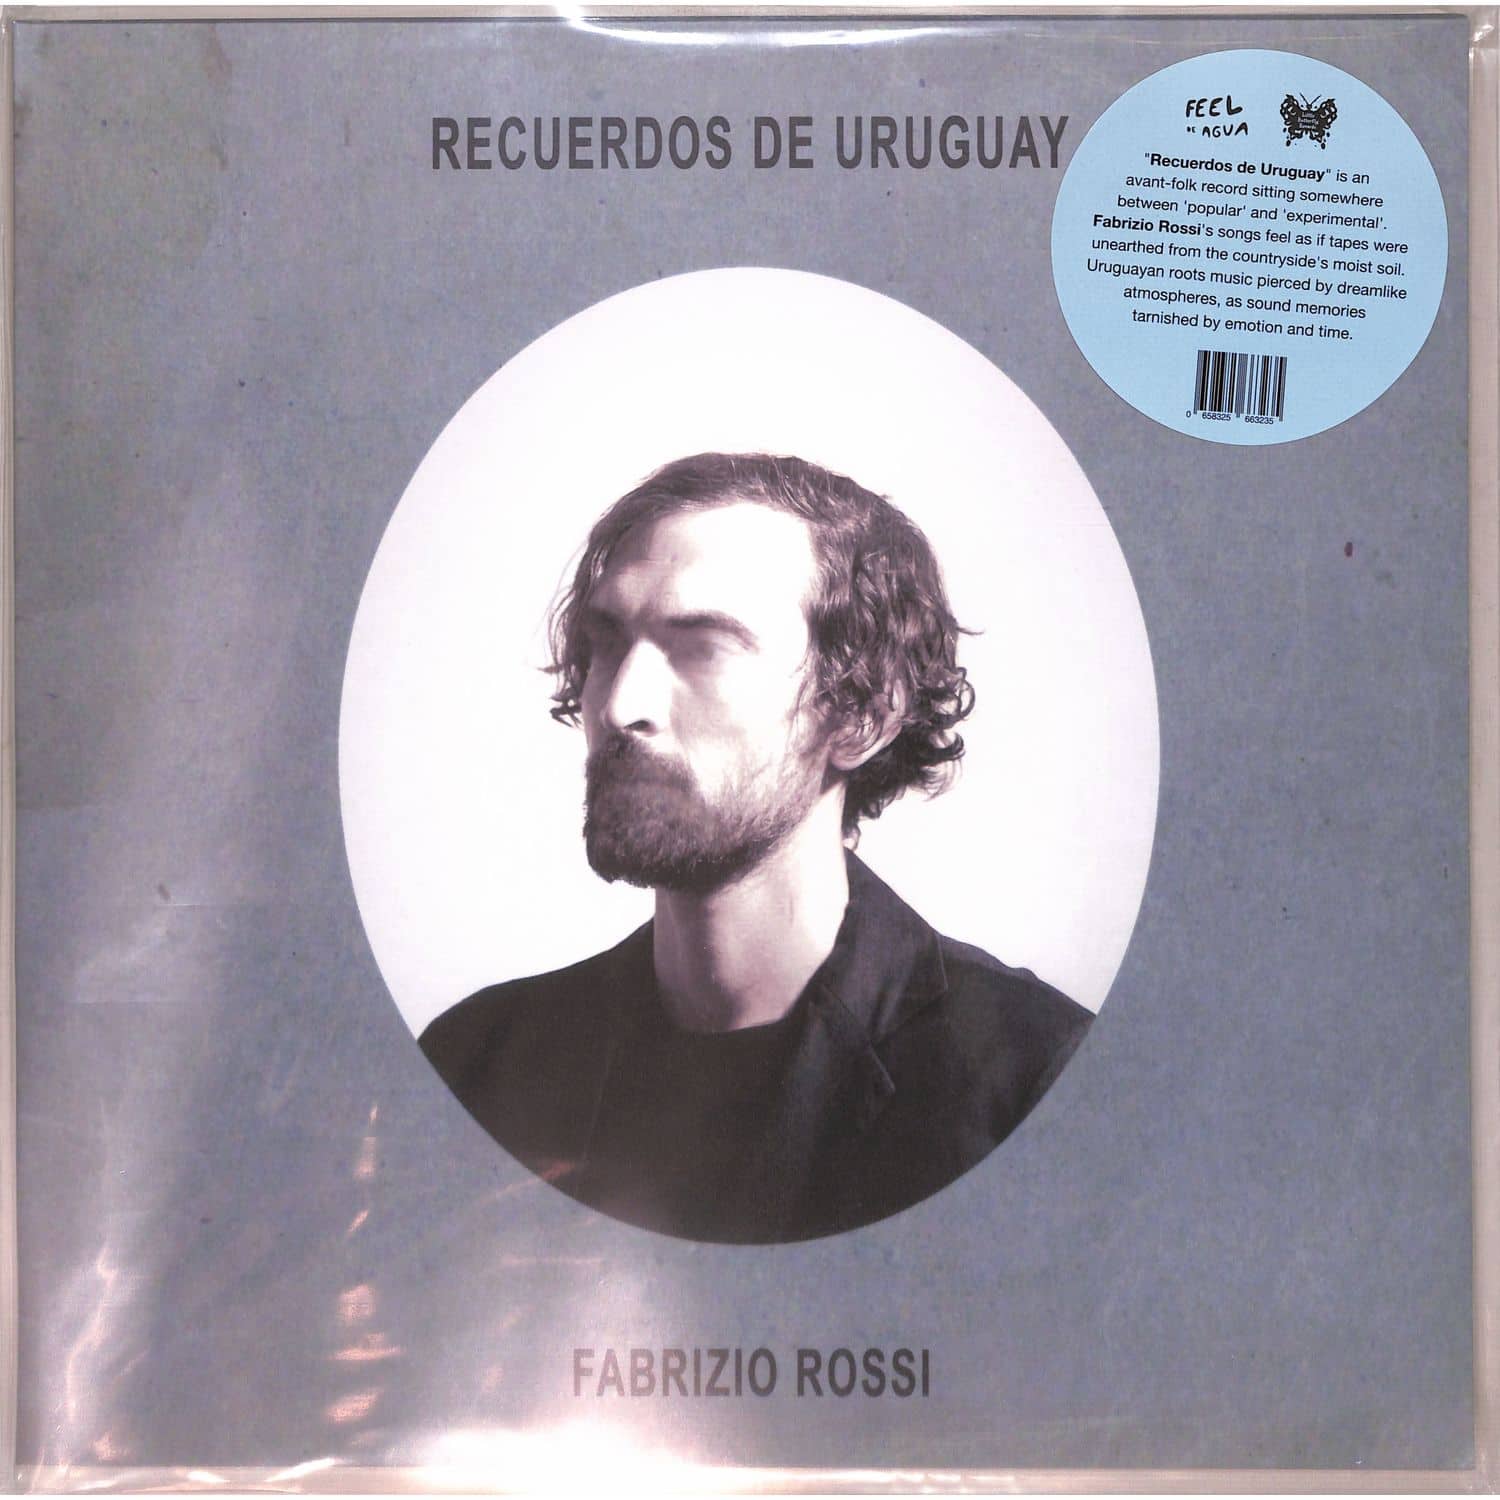 Fabrizio Rossi - RECUERDOS DE URUGUAY 